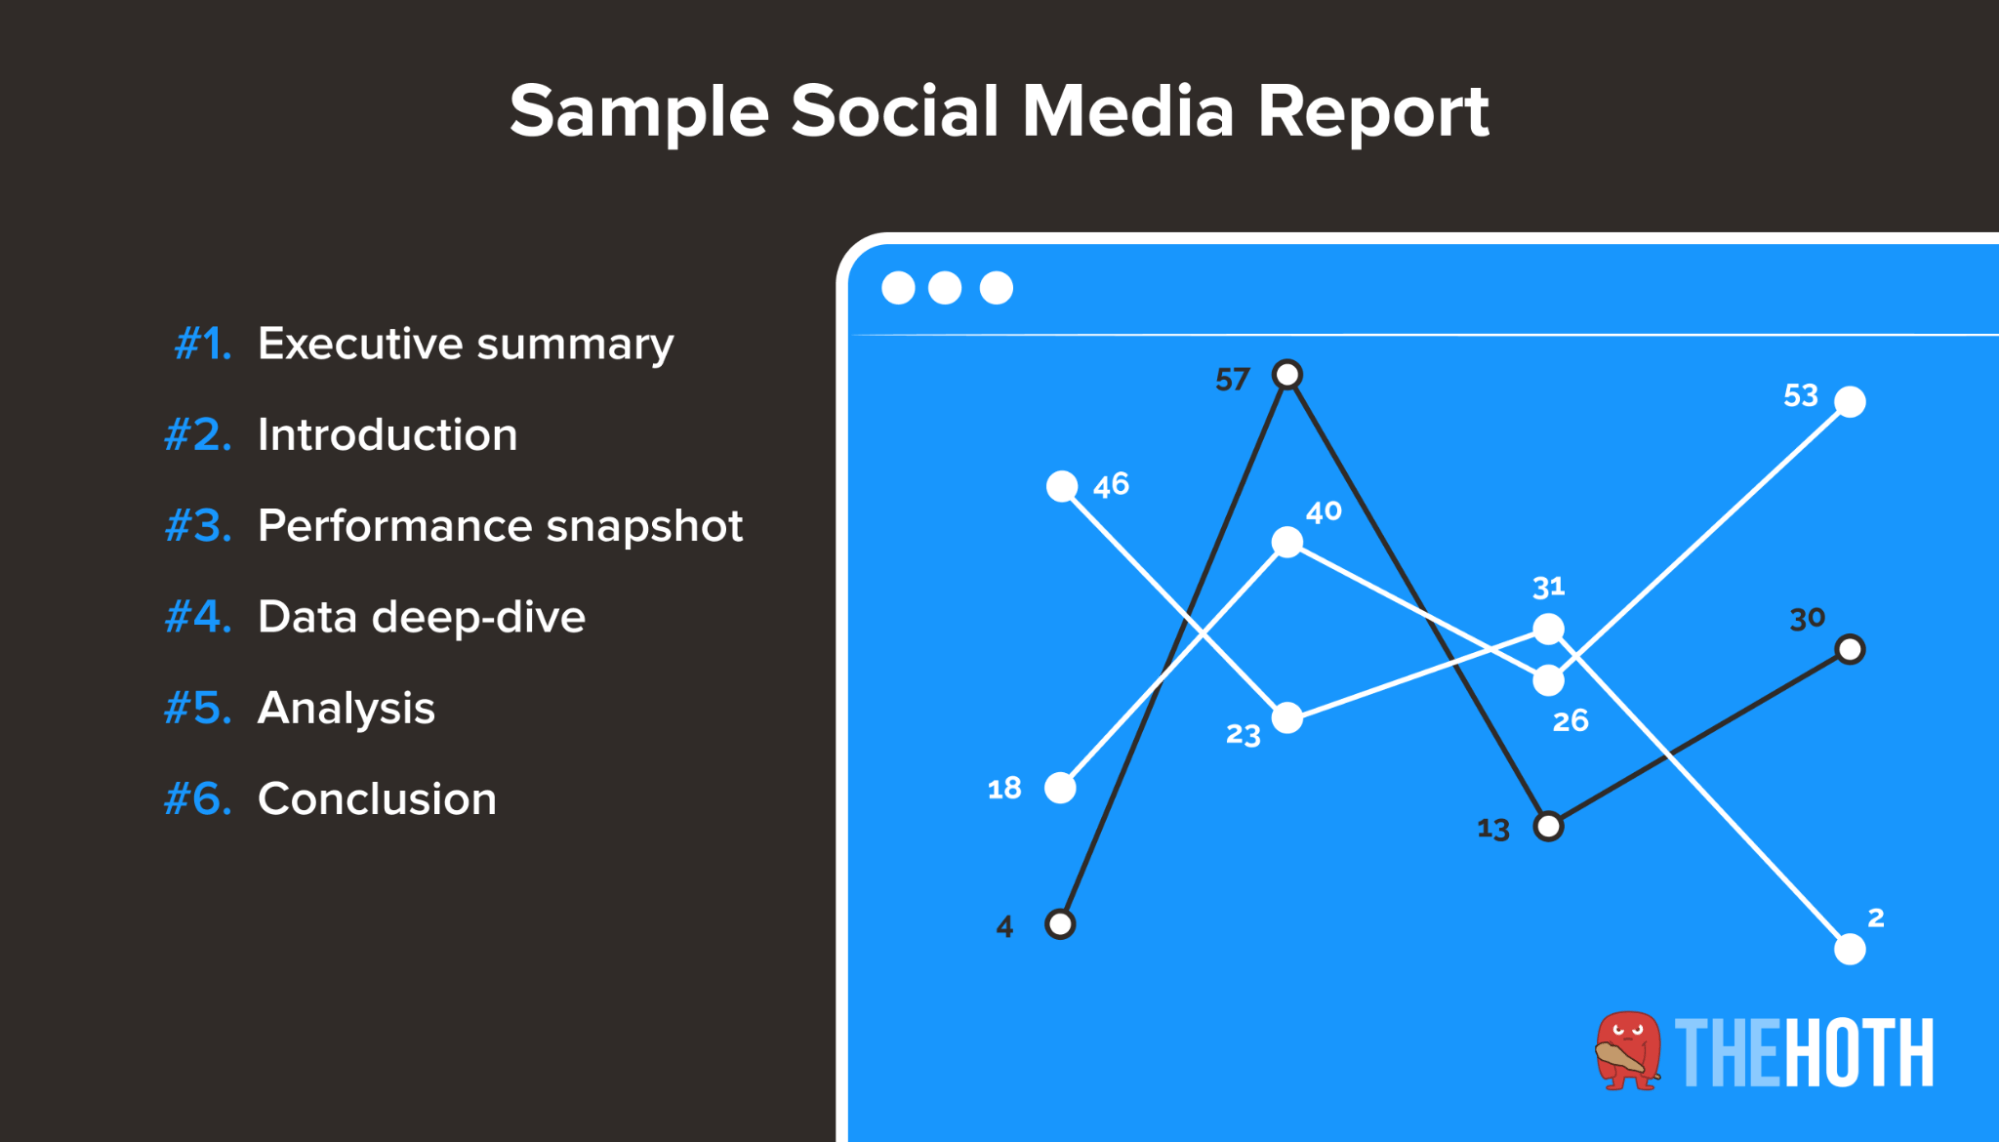 A sample social media report